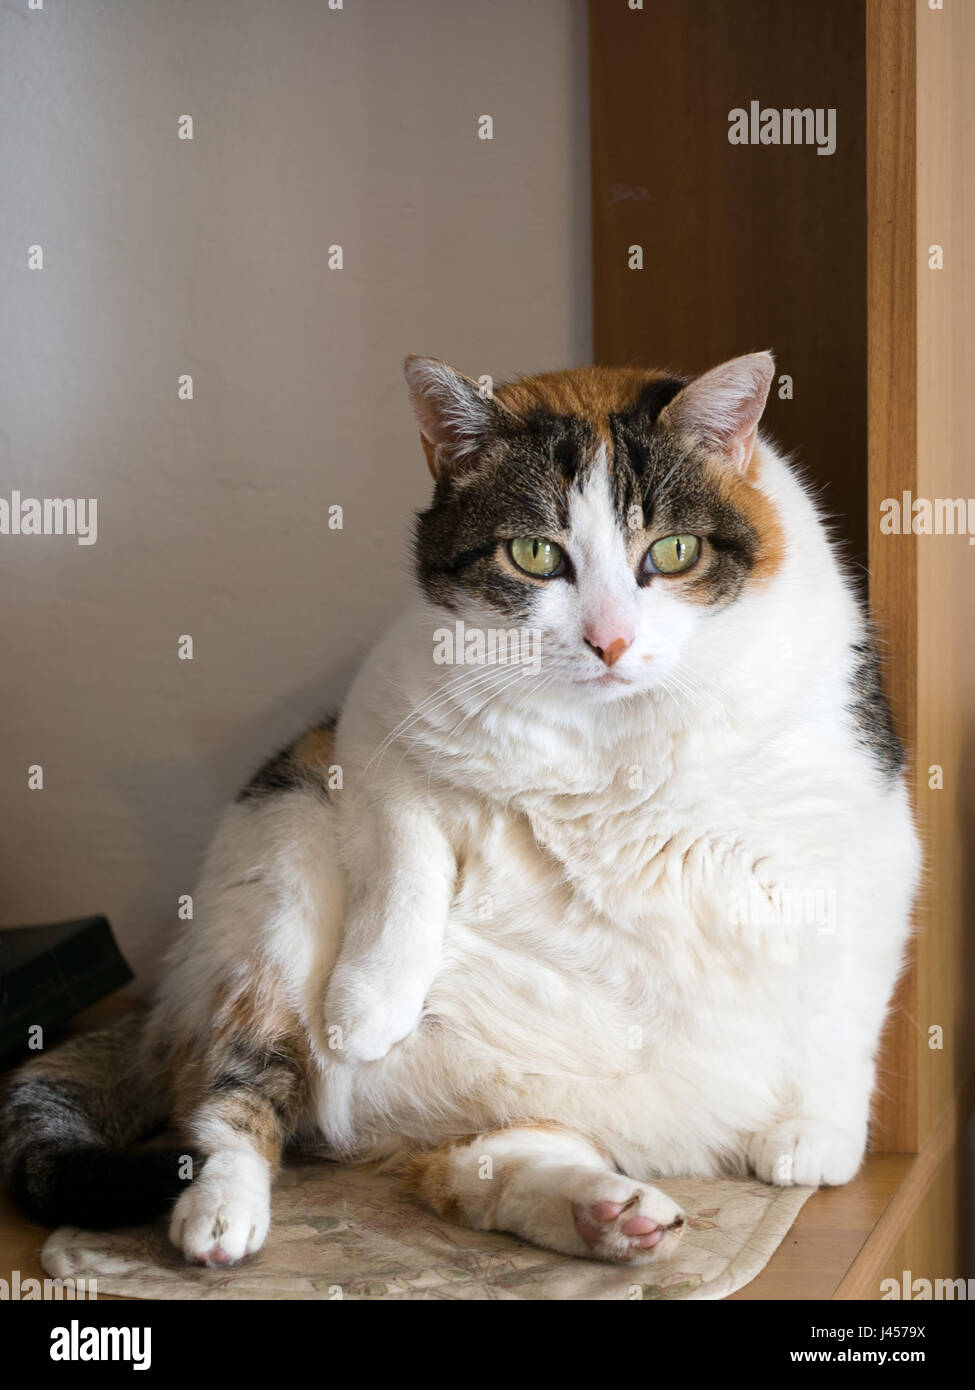 Obese cat immagini e fotografie stock ad alta risoluzione - Alamy